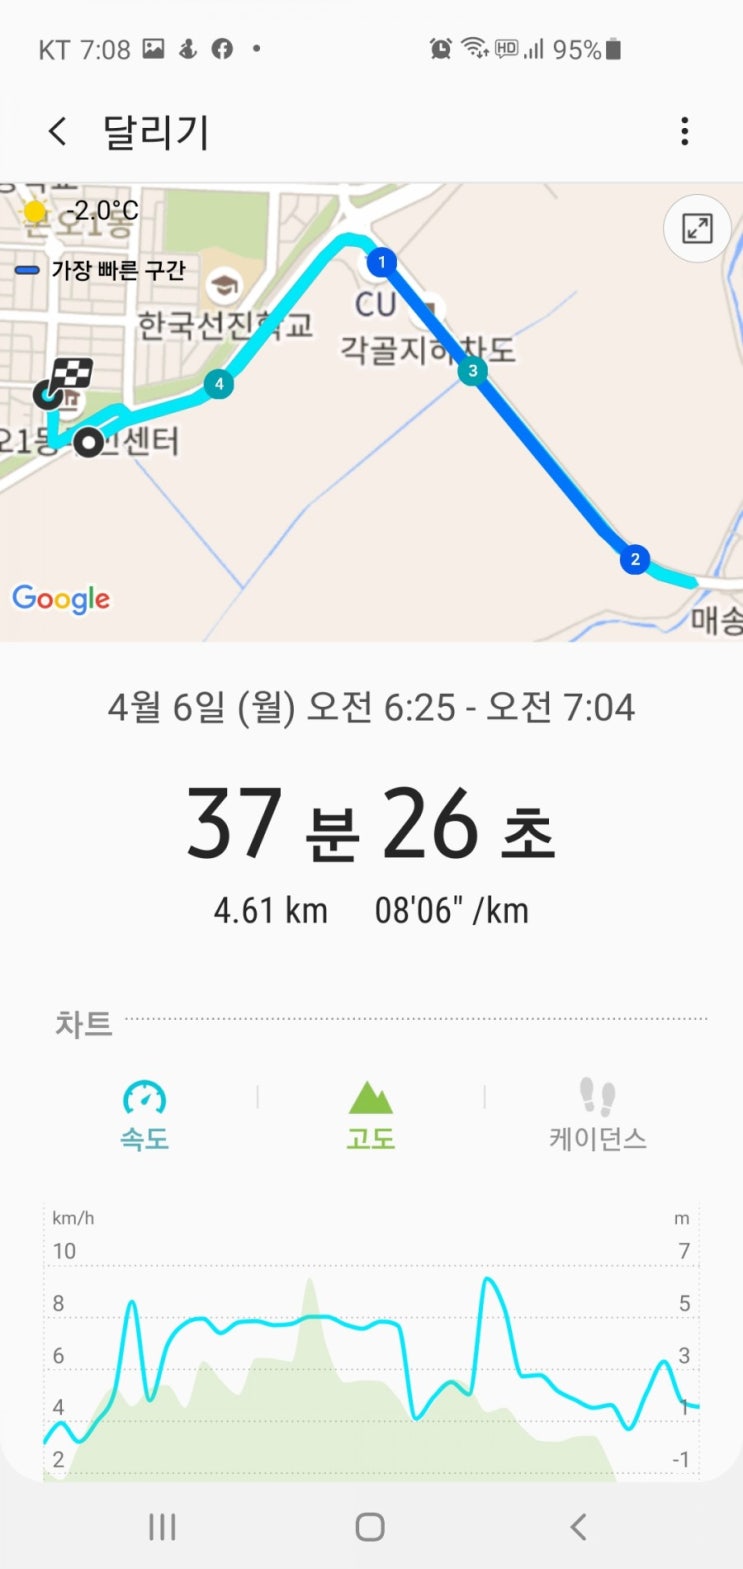 [100 일프로젝트] 13일차~27 달리기 잠정중단  두둥!